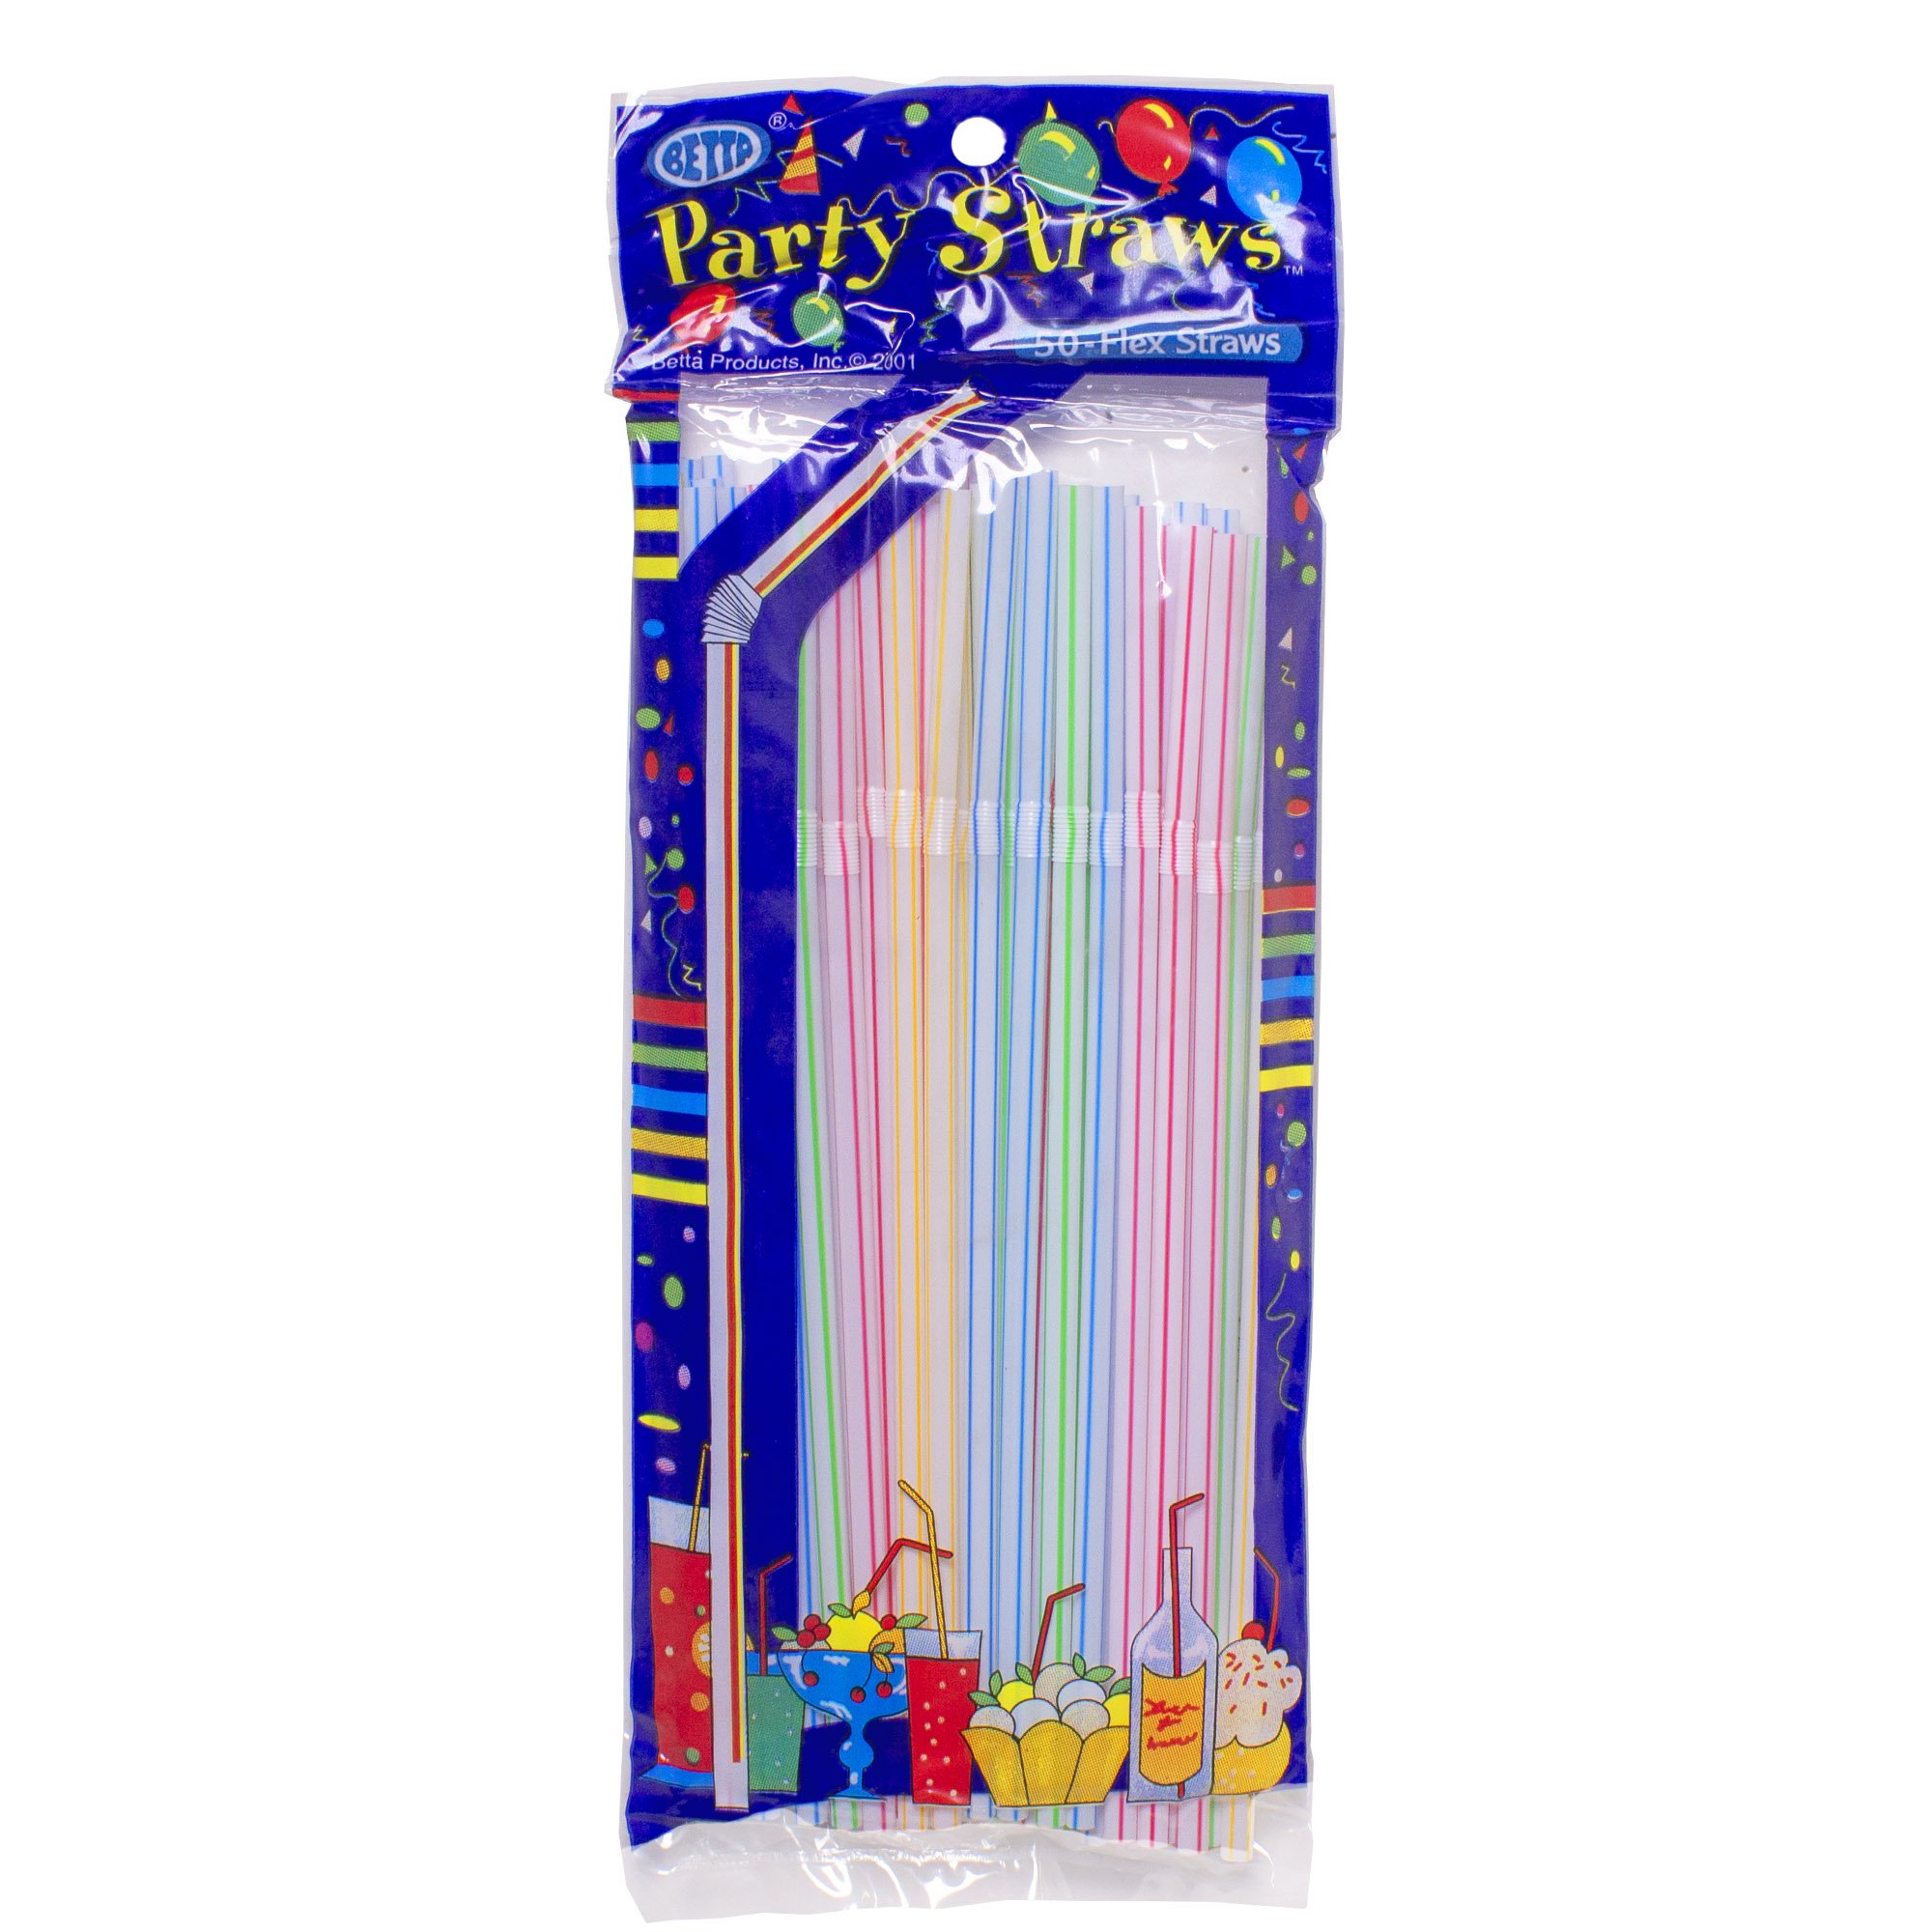 Striped Flex Straws